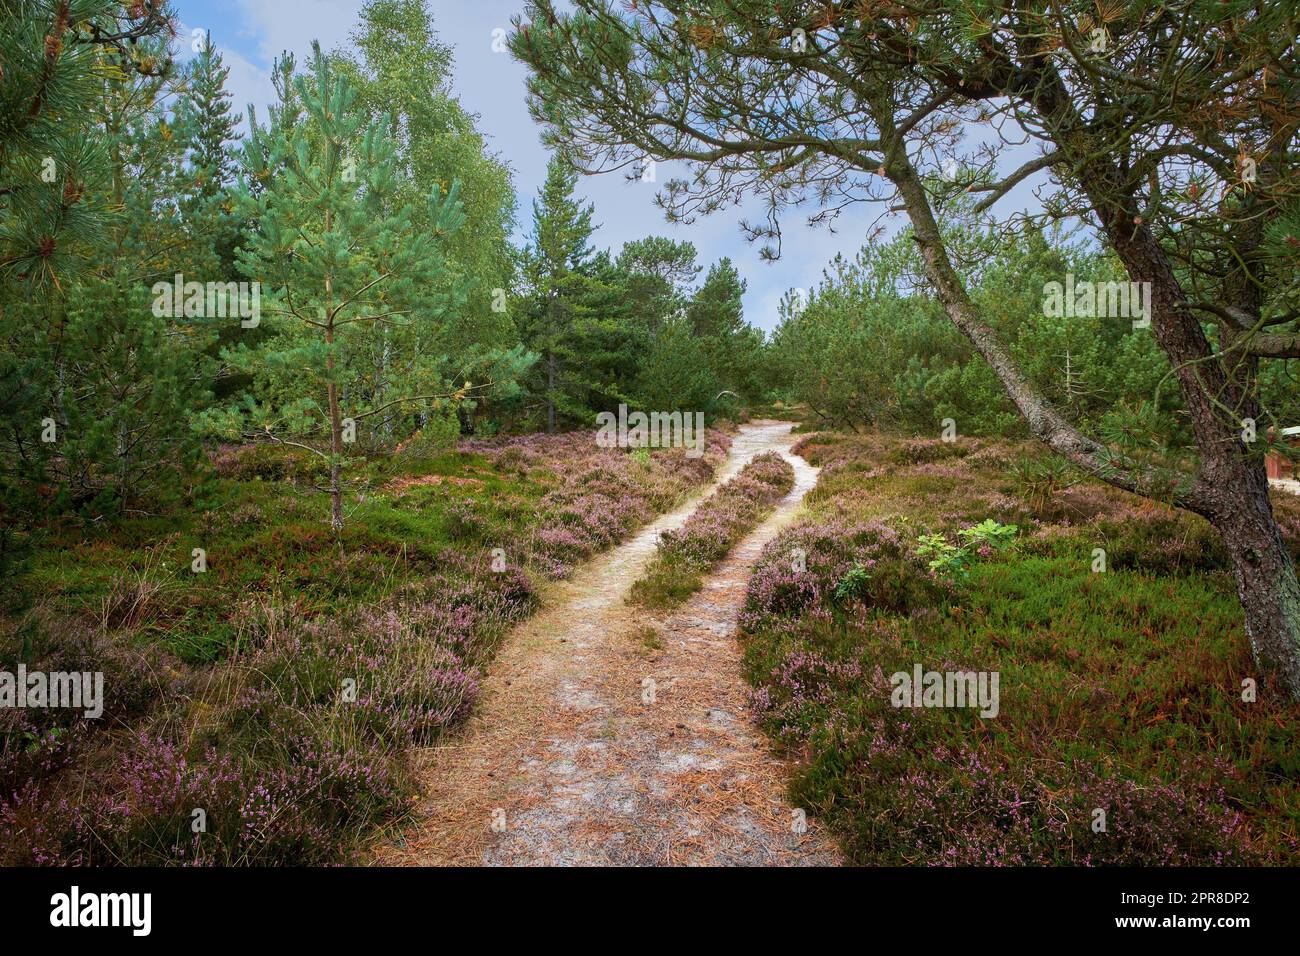 Landschaft mit Wanderwegen oder Pfaden, umgeben von Tannen-, Zedern-, Fichten- oder Kiefernbäumen in ruhigen Wäldern in Schweden. Umweltwachstum oder Naturschutz in abgelegenen, ruhigen Nadelwäldern Stockfoto